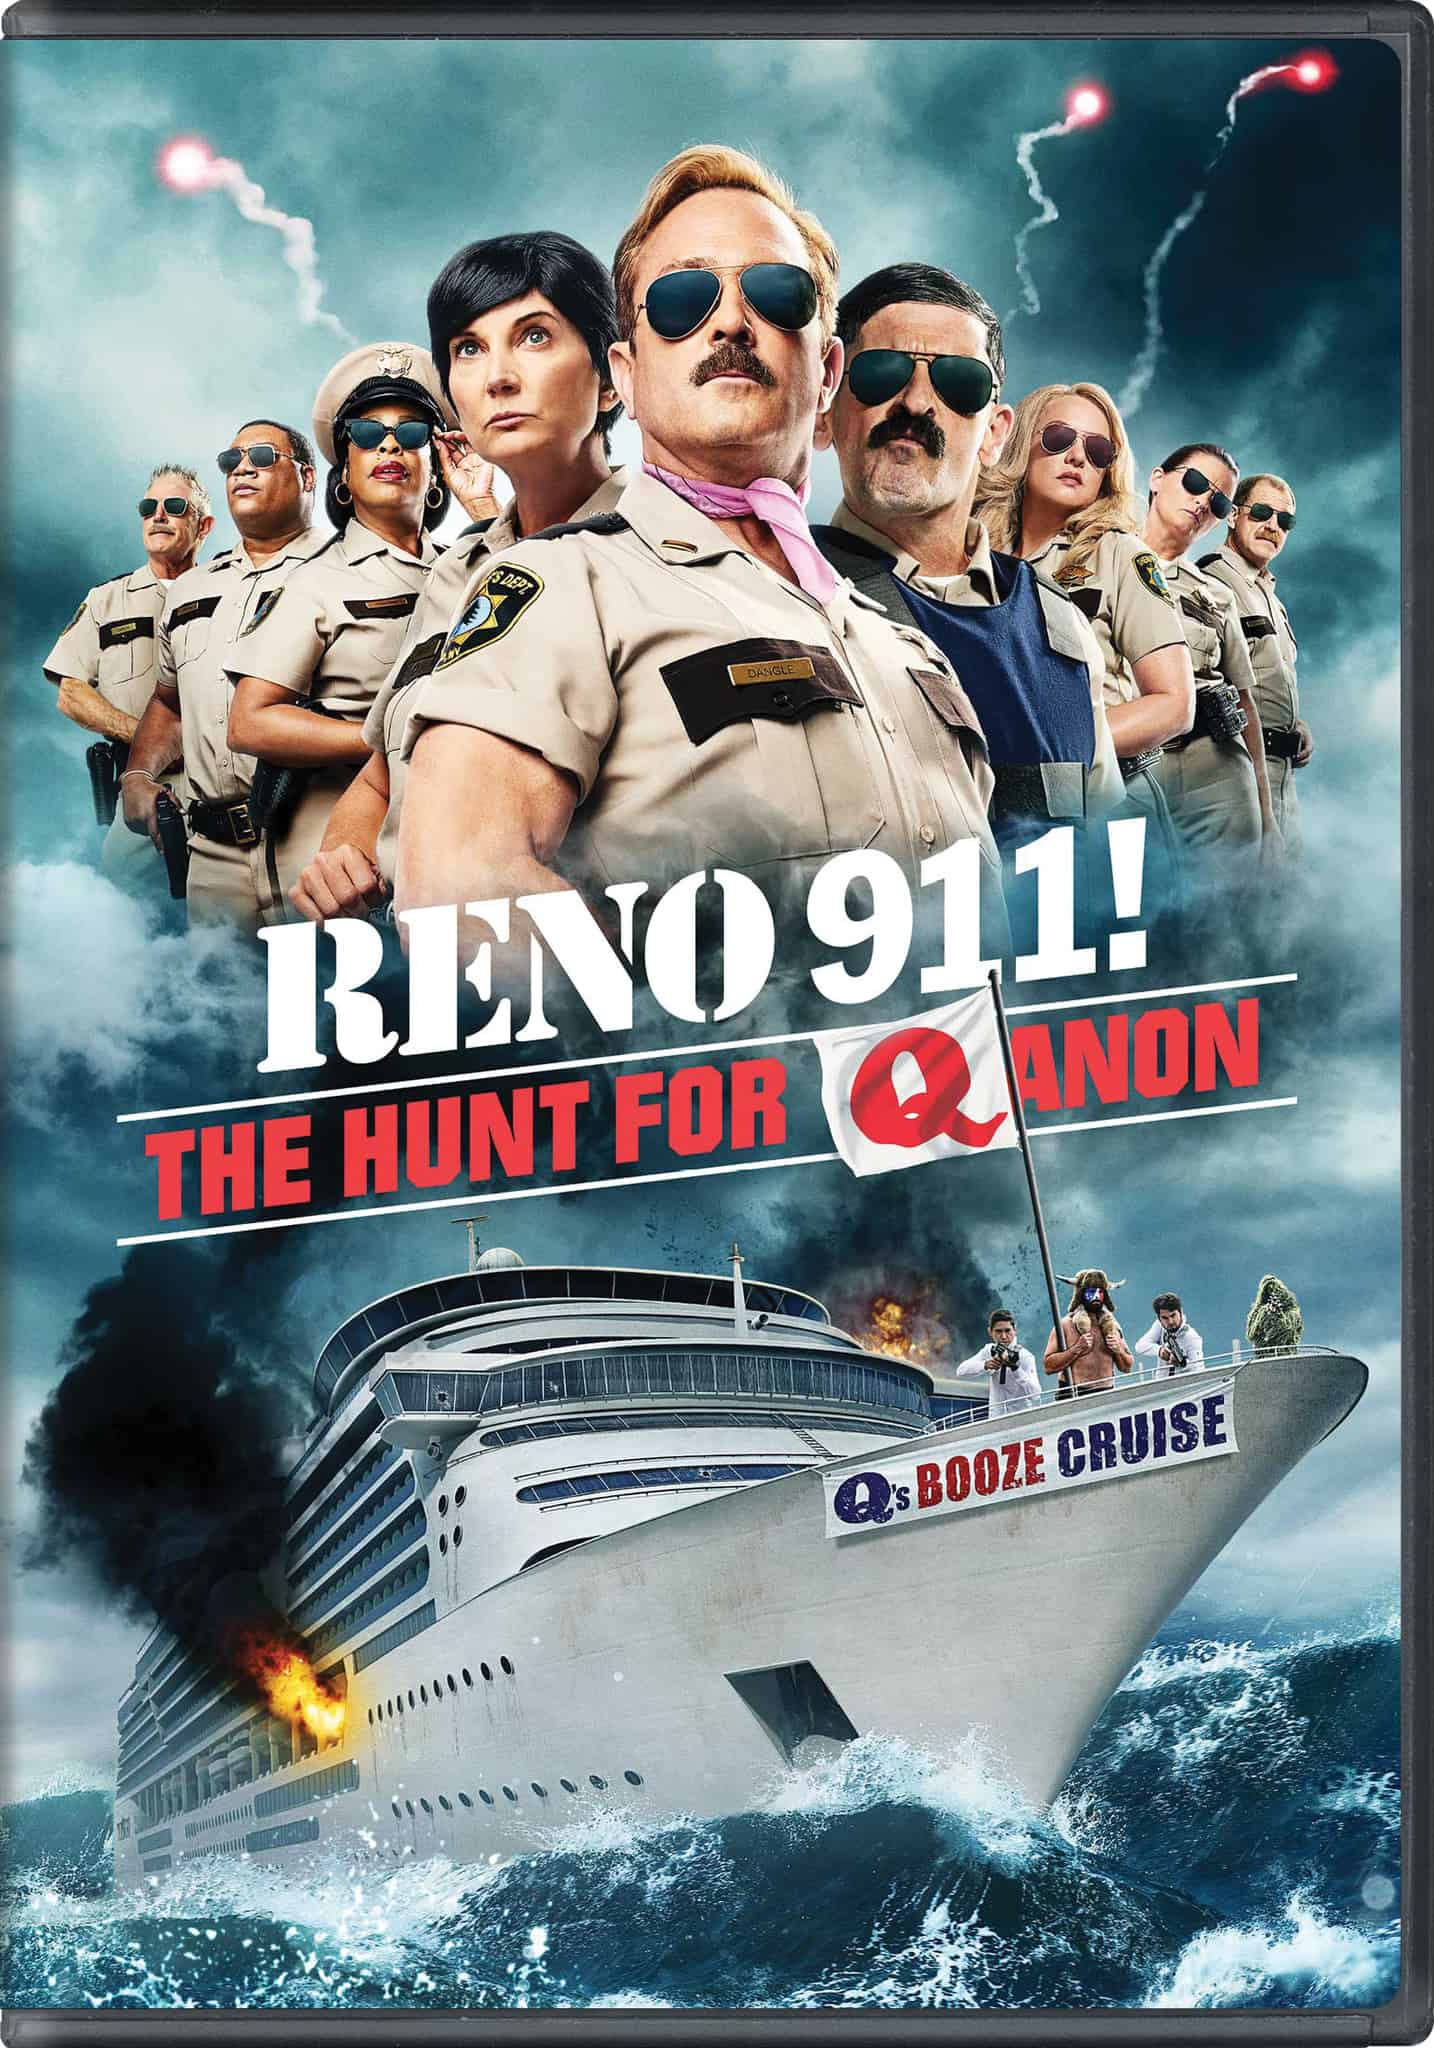 Reno 911 The Hunt for QANON DVD Fall 2022